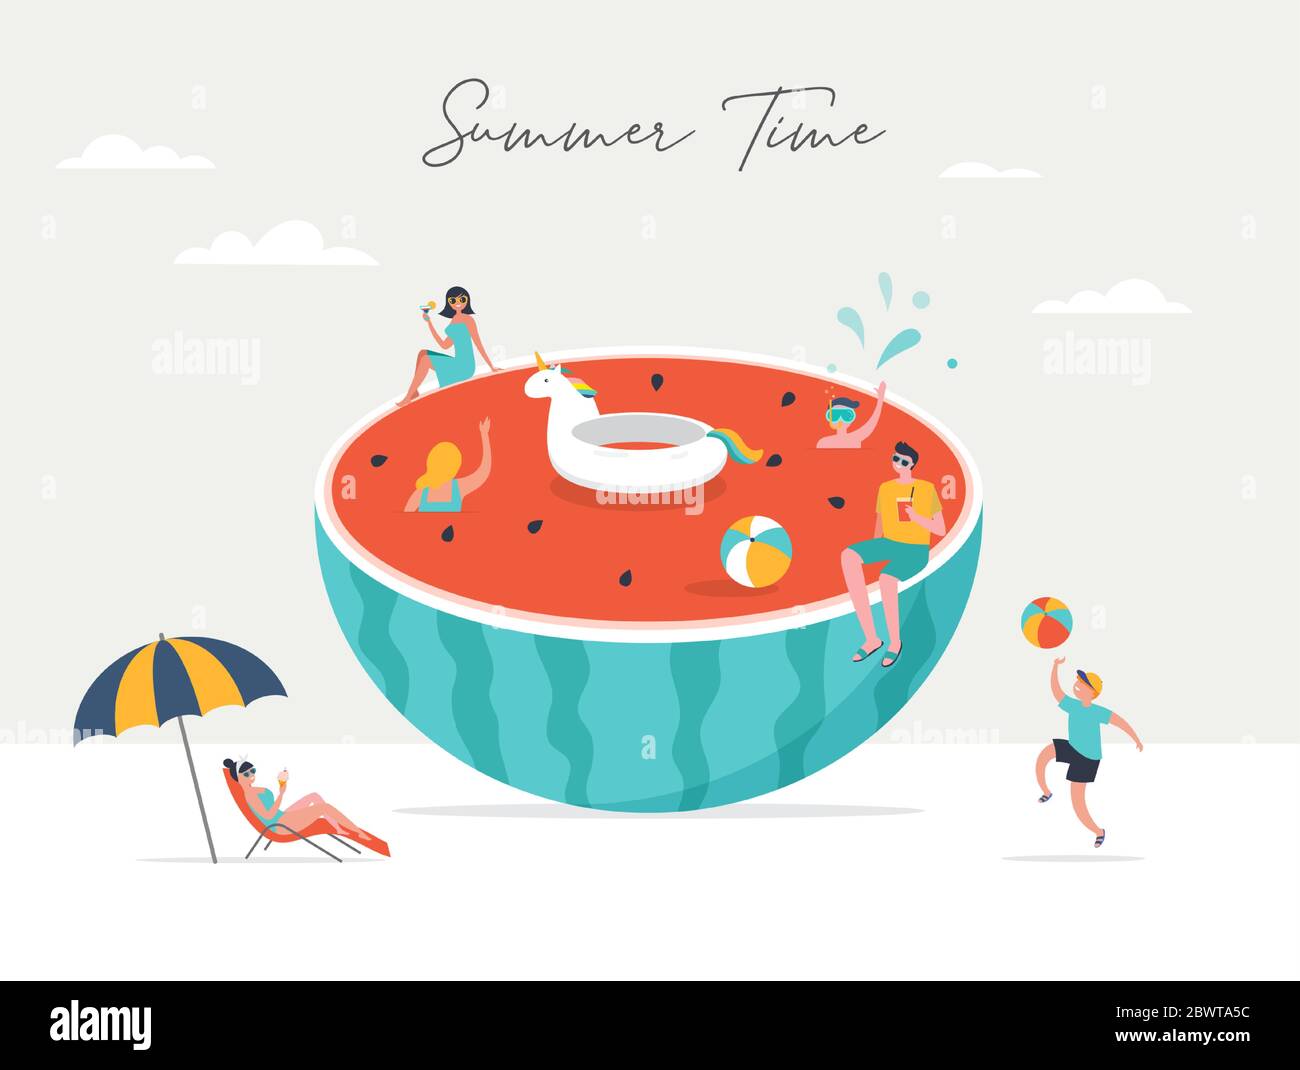 Scène d'été, groupe de personnes s'amusant autour d'une énorme pastelson, surf, natation dans la piscine, boisson froide, jouer sur la plage Illustration de Vecteur